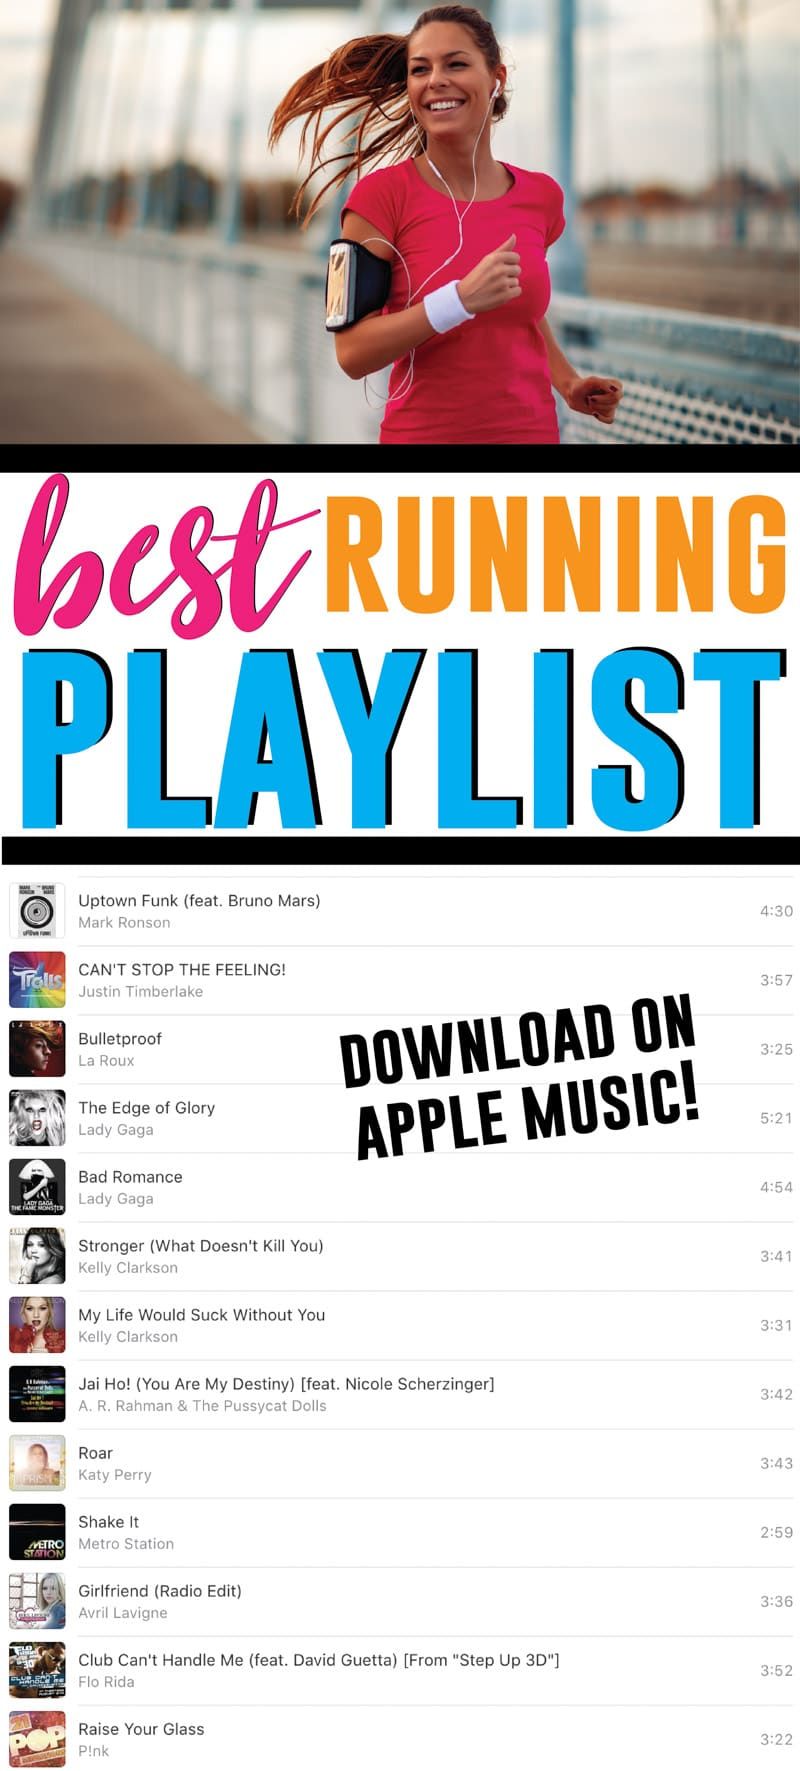 Dokonalý optimálny zoznam skladieb! Plný všetkého od country po rock a najlepších hip hopových a popových skladieb z 90. rokov až do roku 2019! Najlepšie motivačné skladby, ktoré vám pomôžu rýchlo bežať! Získajte zoznam skladieb Apple Music už teraz!